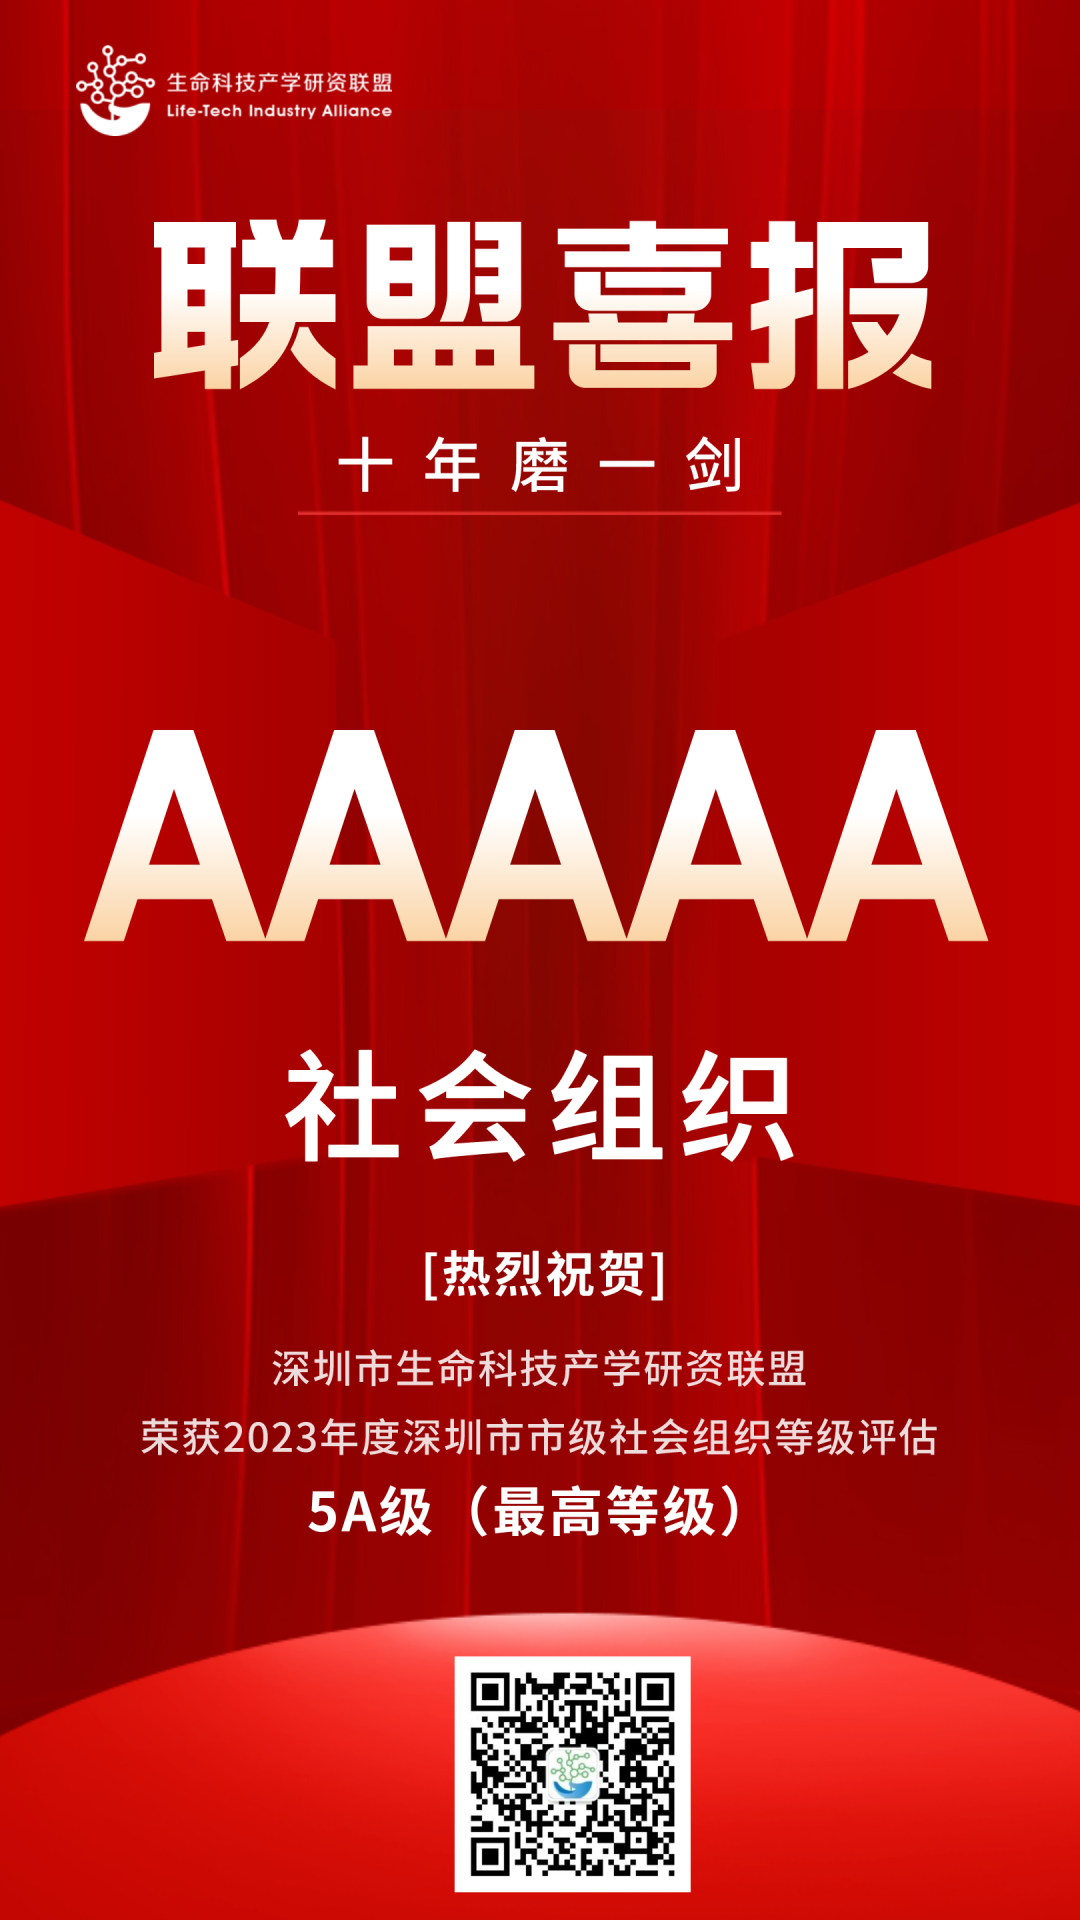 喜讯！深圳市生命科技产学研资联盟获评5A级社会组织！